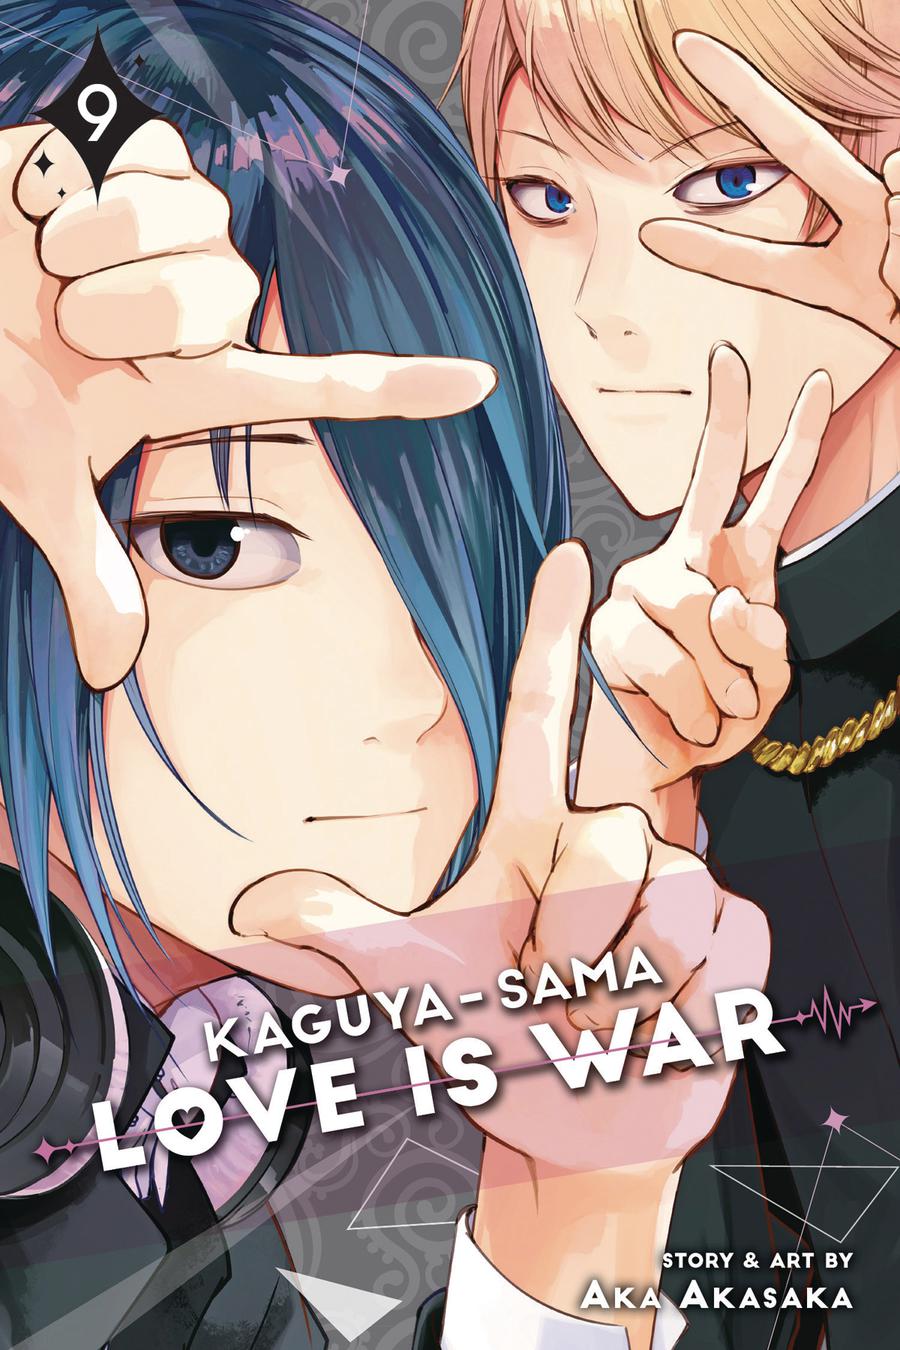 Kaguya-Sama Love Is War Vol 9 GN